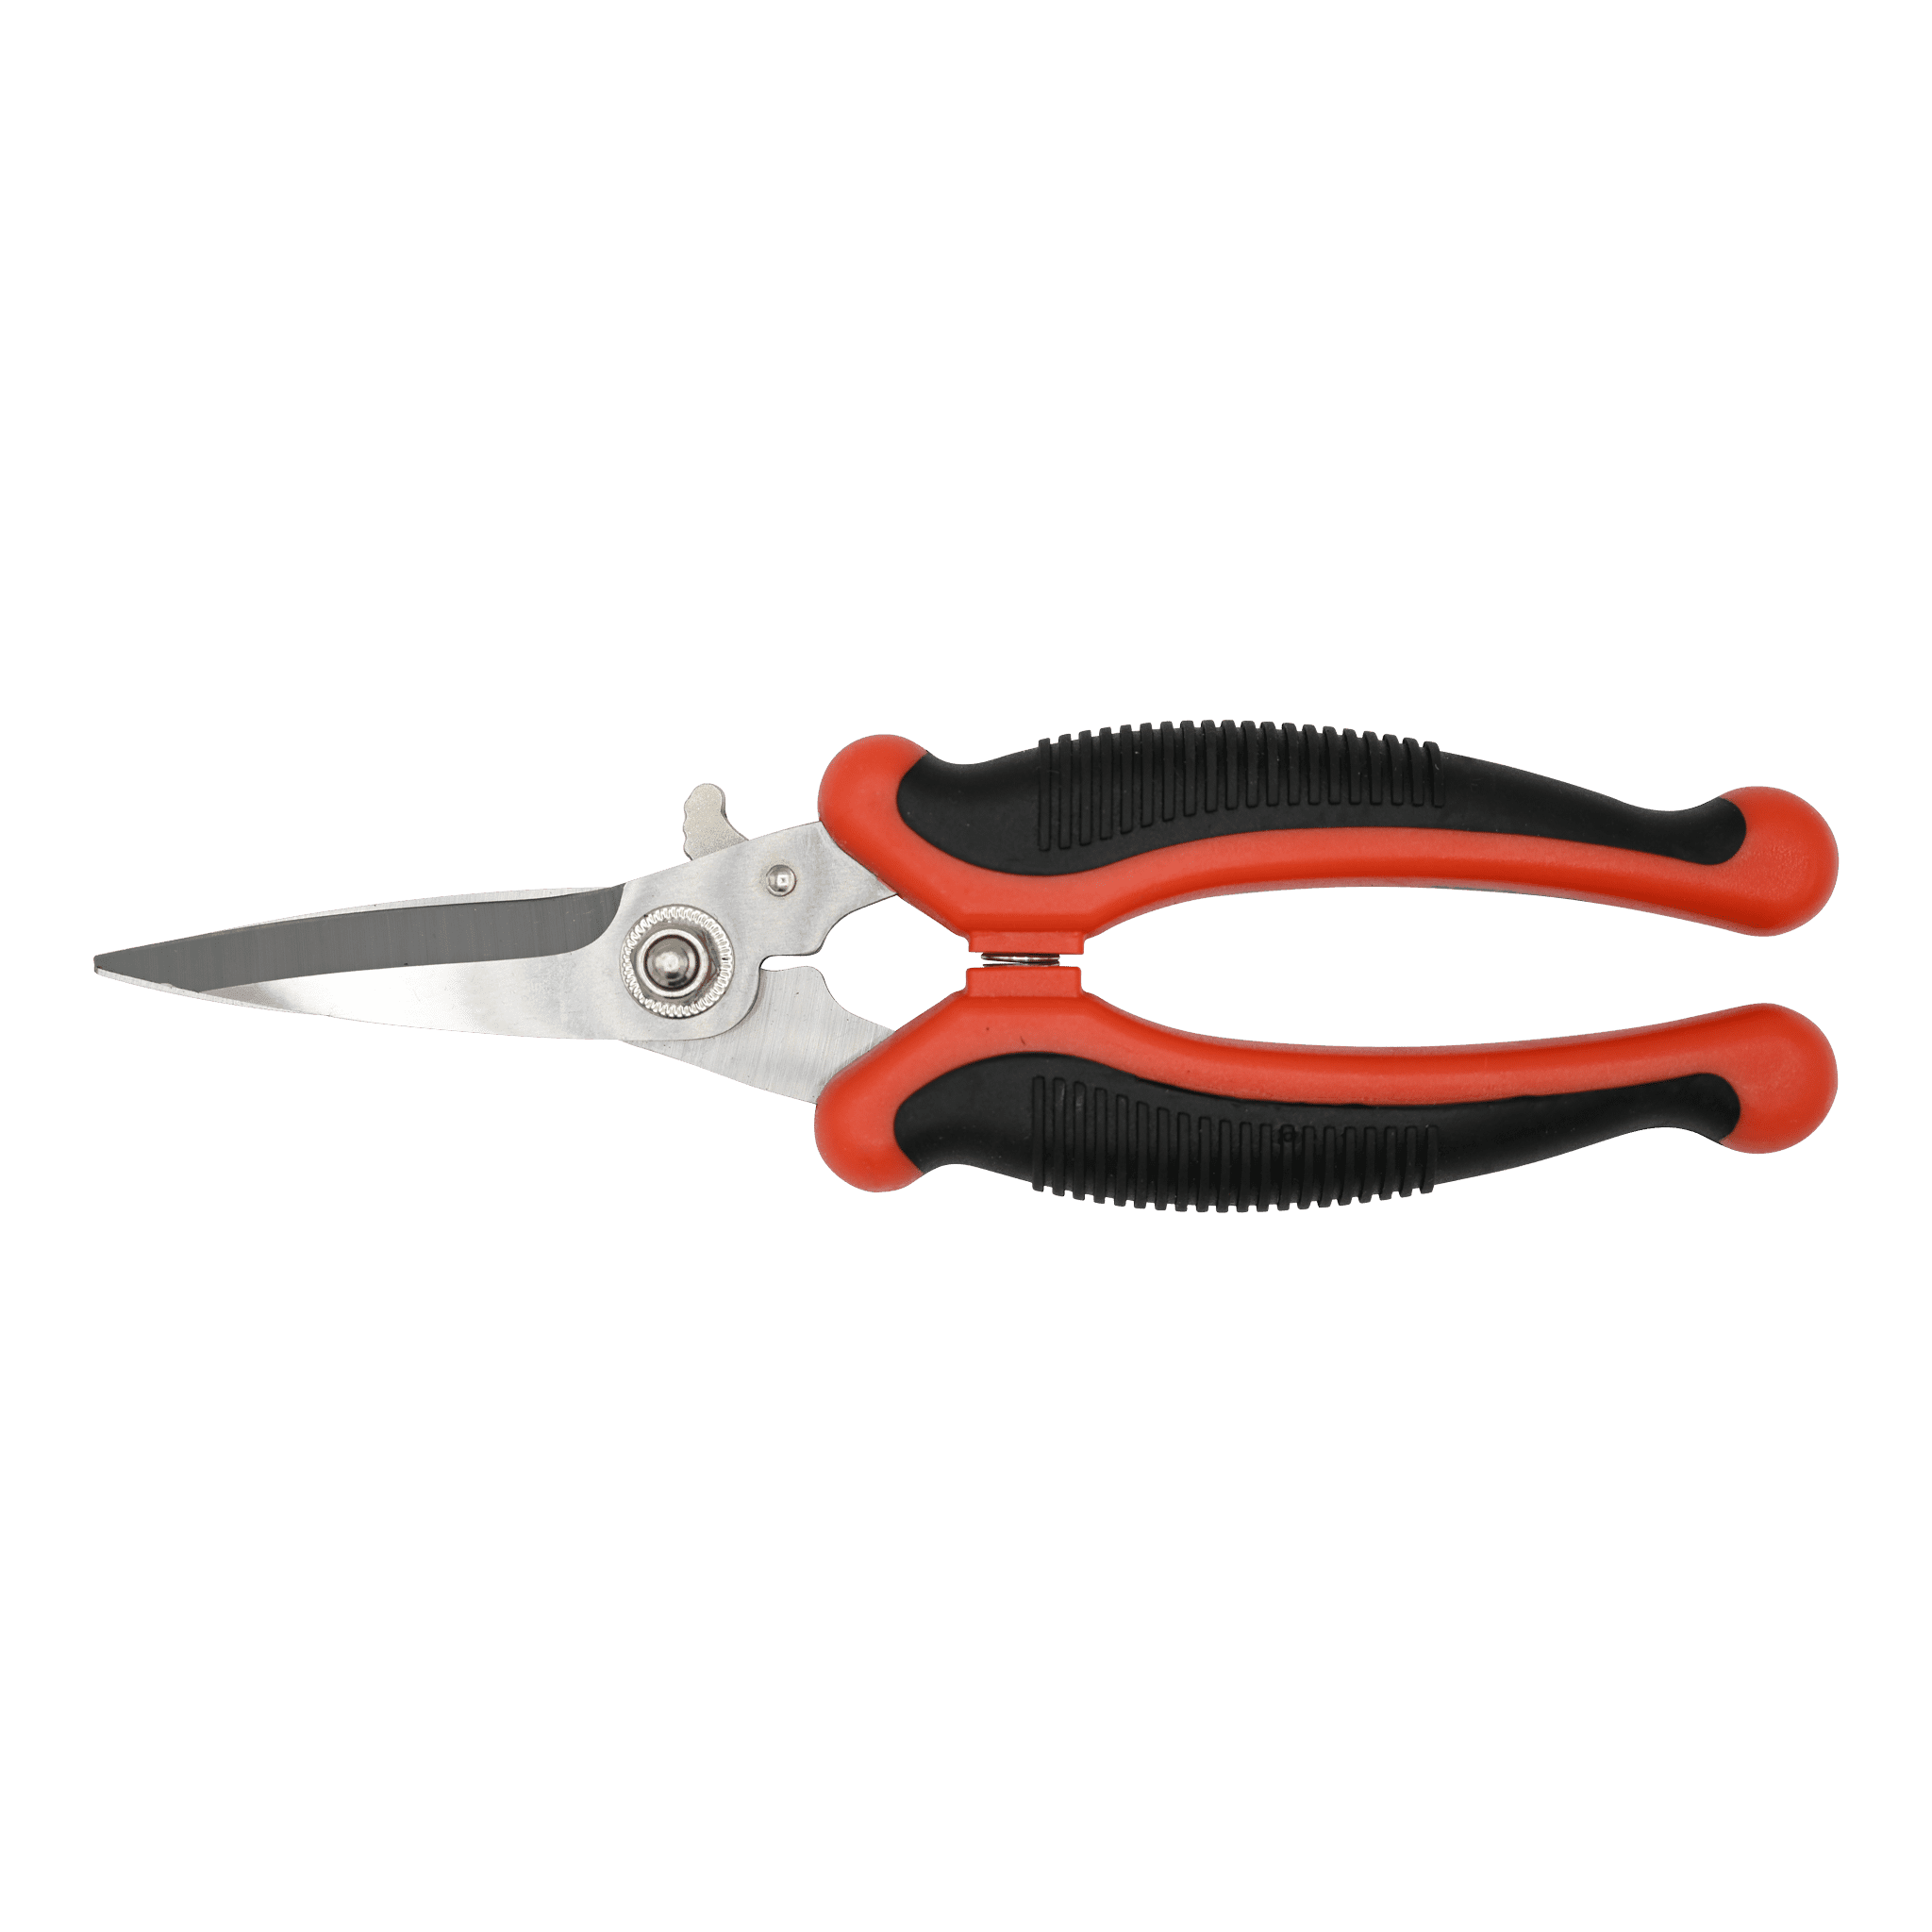 Wezsnips Scissors - Matuska Taxidermy Supply Company